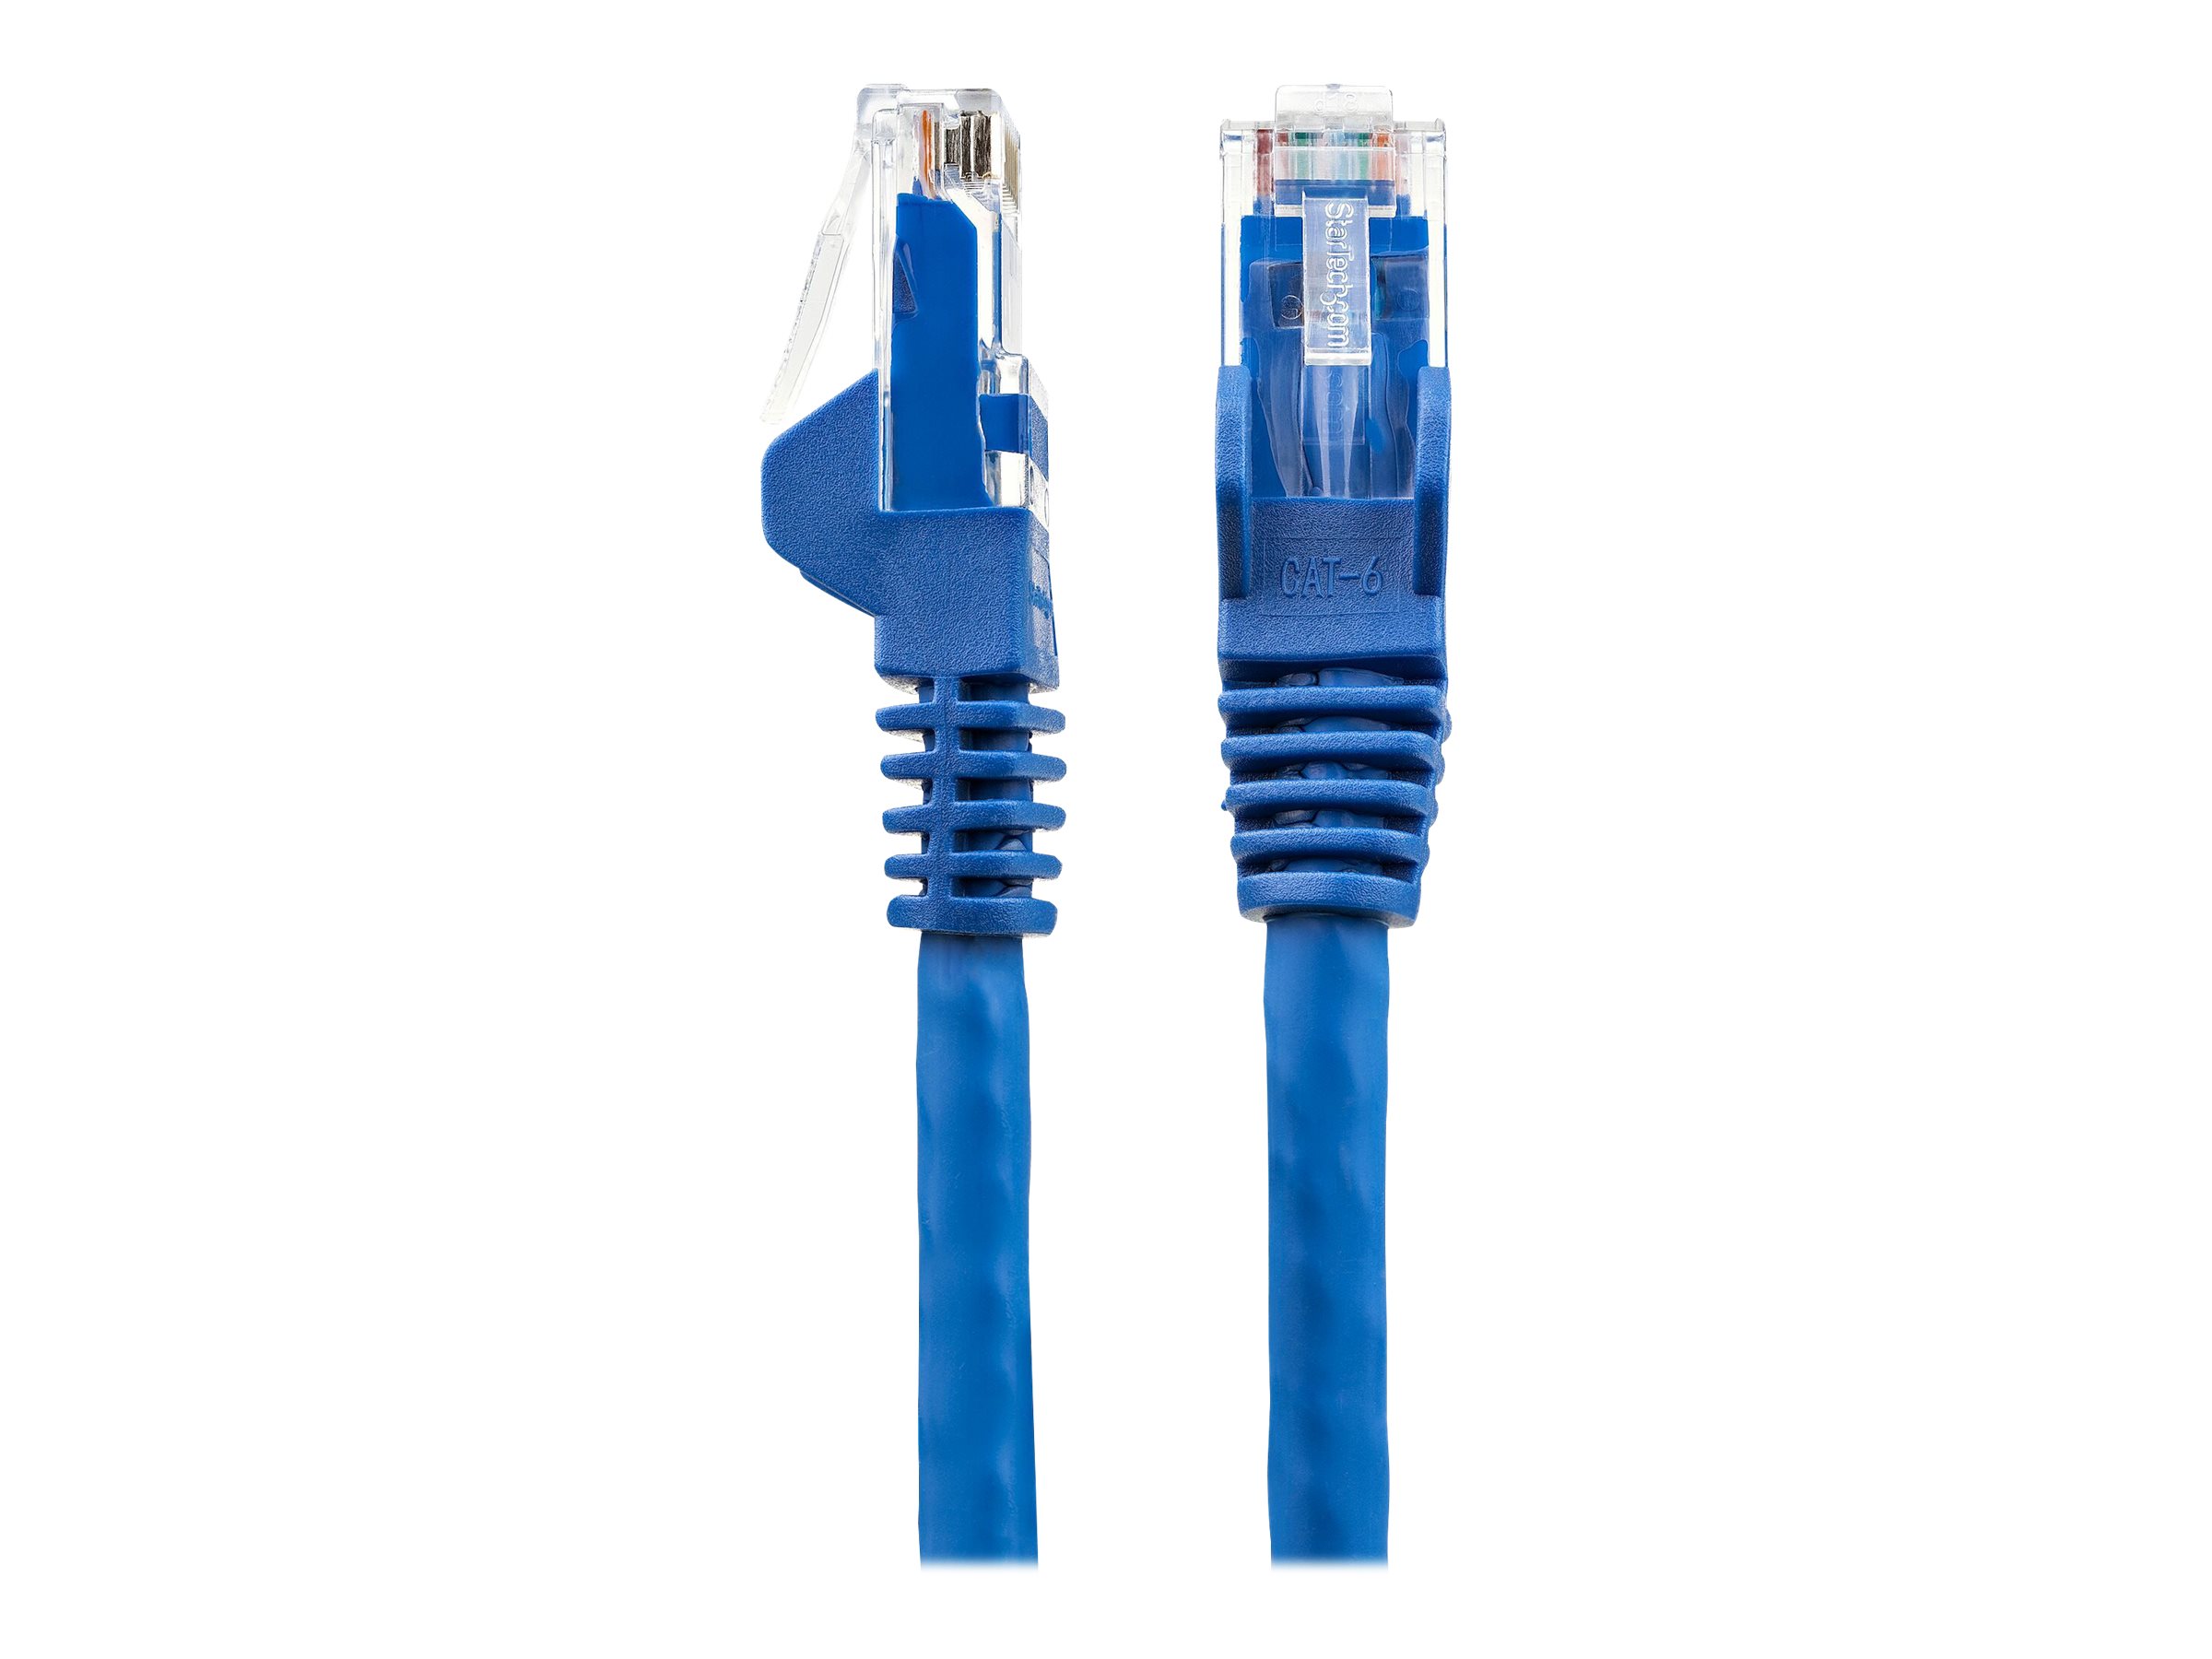 StarTech.com Câble Ethernet CAT6 1m - LSZH (Low Smoke Zero Halogen) - Cordon RJ45 UTP Anti-accrochage 10 GbE LAN - Câble Réseau Internet 650MHz 100W PoE - Bleu - Snagless - 24AWG (N6LPATCH1MBL) - Cordon de raccordement - RJ-45 (M) pour RJ-45 (M) - 1 m - 6 mm - UTP - CAT 6 - sans crochet - bleu - N6LPATCH1MBL - Câbles à paire torsadée